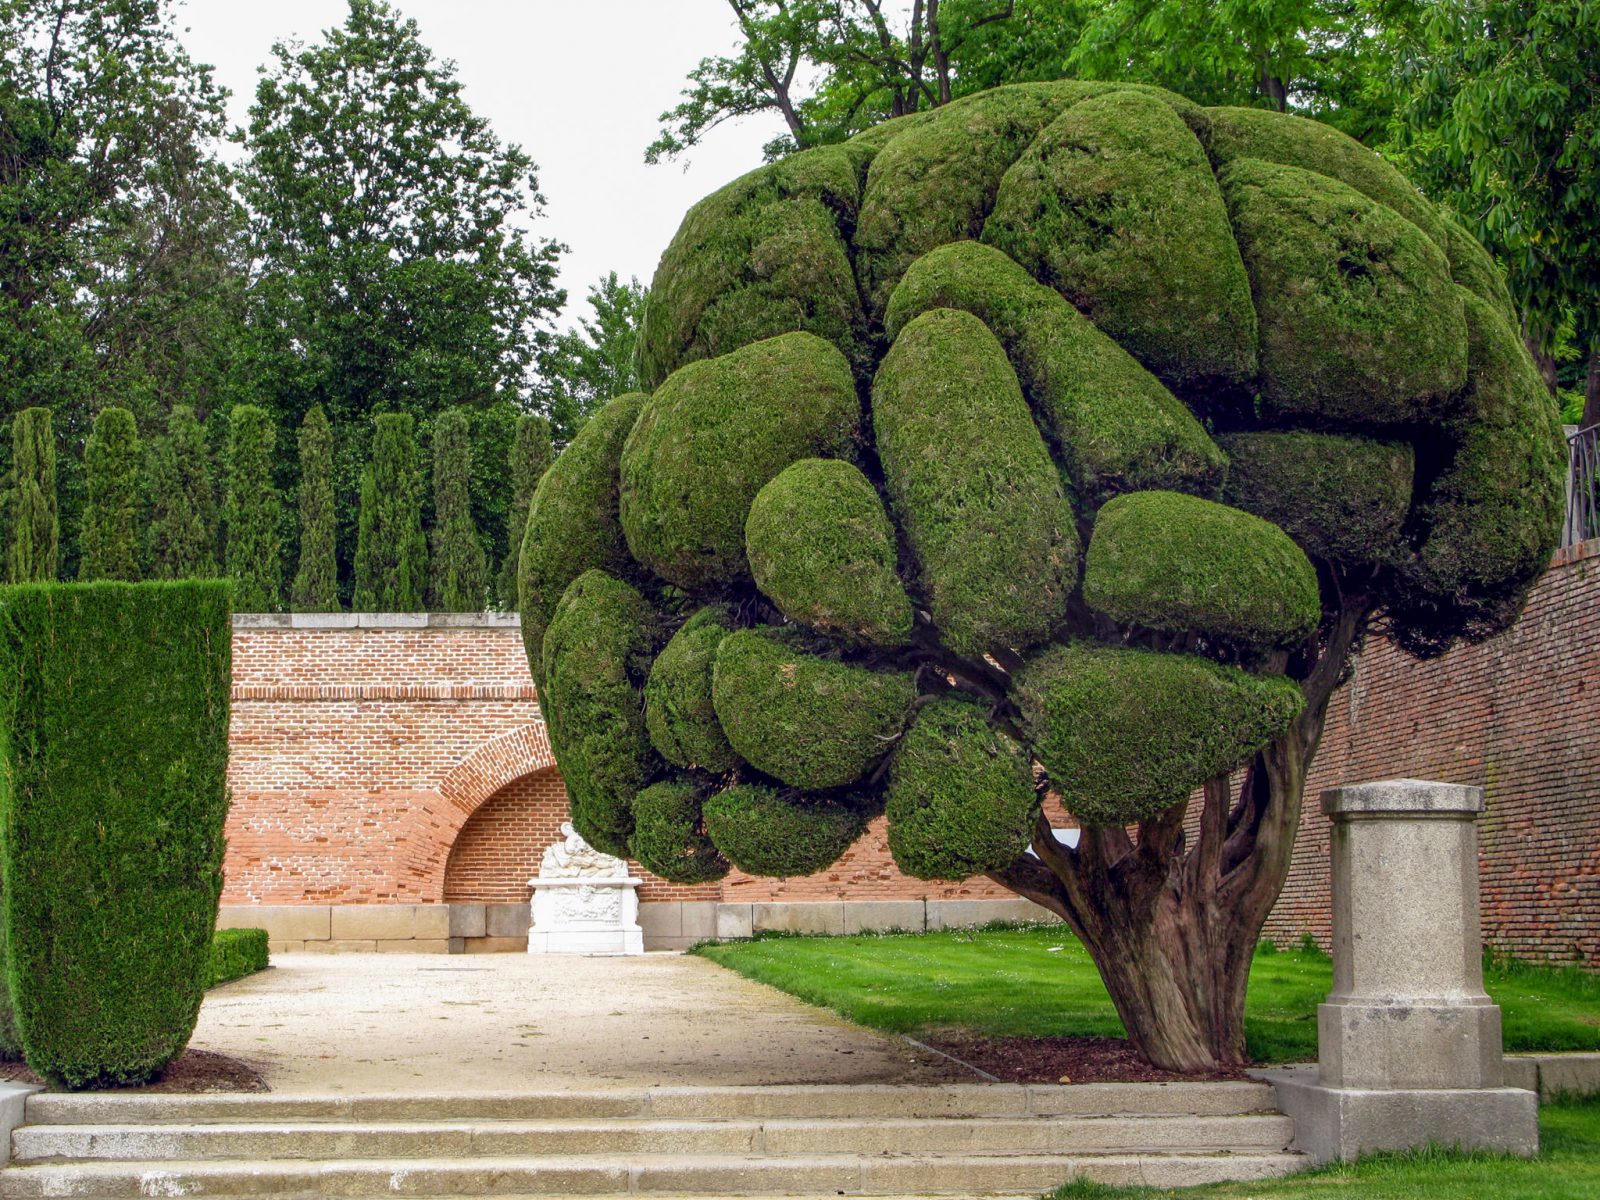 Необычные плюшевые деревья в парке Ретиро в Мадриде Испания